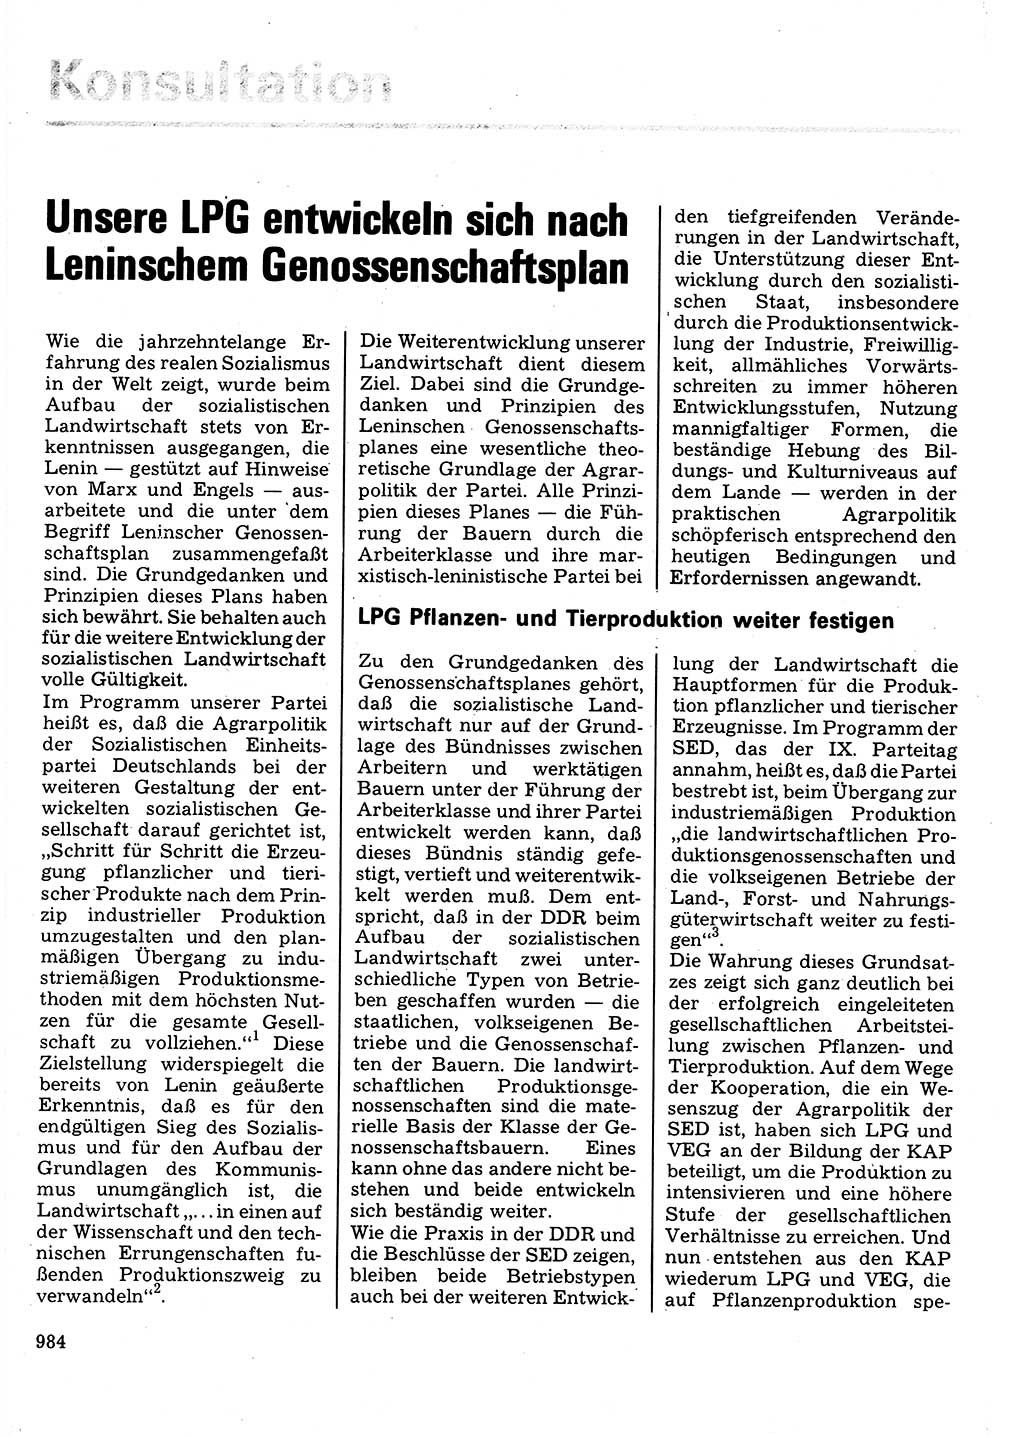 Neuer Weg (NW), Organ des Zentralkomitees (ZK) der SED (Sozialistische Einheitspartei Deutschlands) für Fragen des Parteilebens, 32. Jahrgang [Deutsche Demokratische Republik (DDR)] 1977, Seite 984 (NW ZK SED DDR 1977, S. 984)